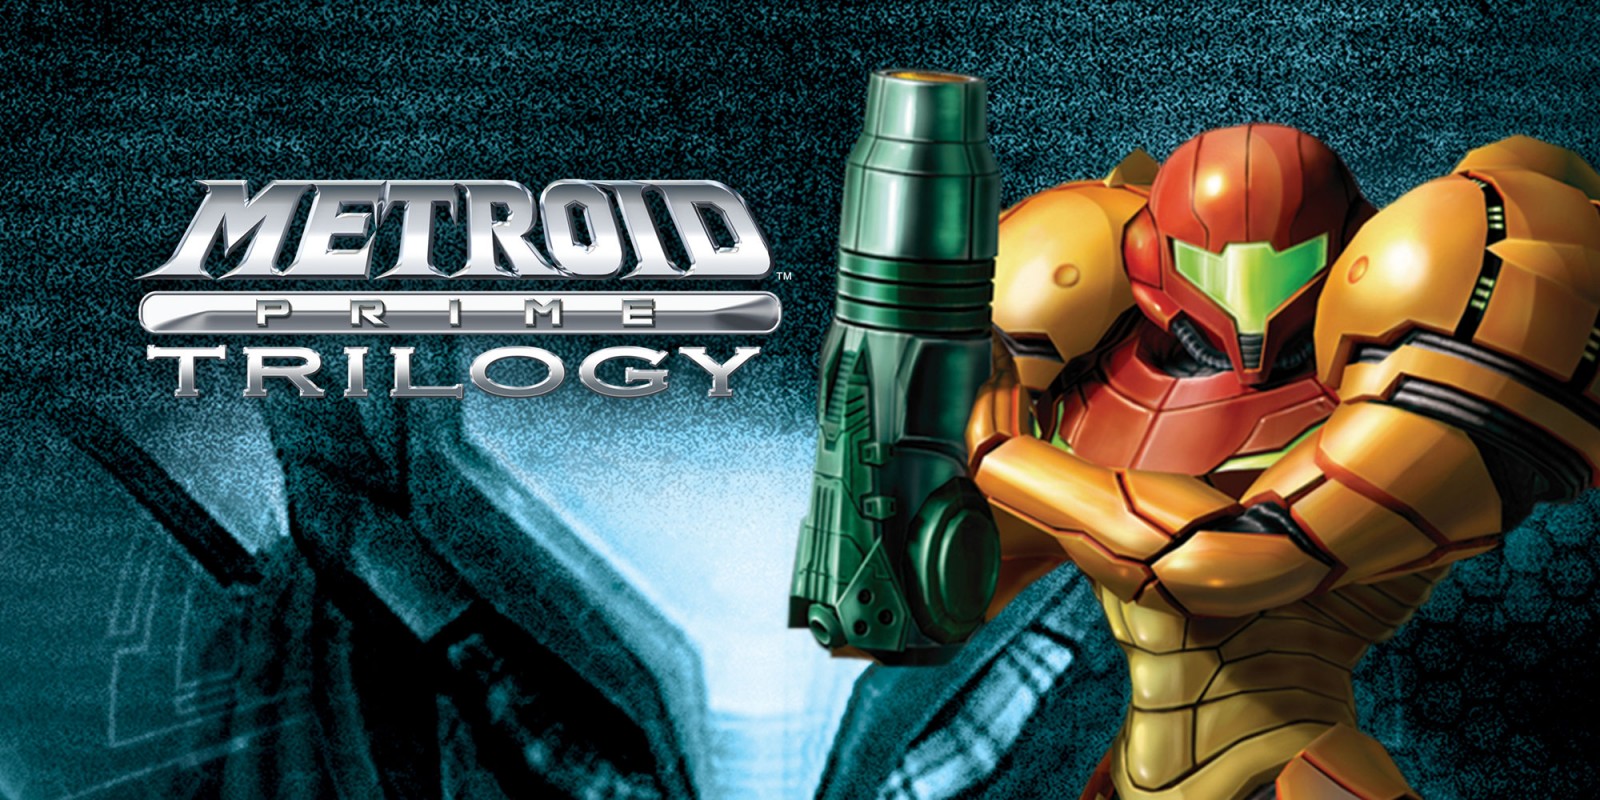 Insider asegura que Metroid Prime Trilogy se encuentra ya terminado pero Nintendo aun lo planea lanzarlo.